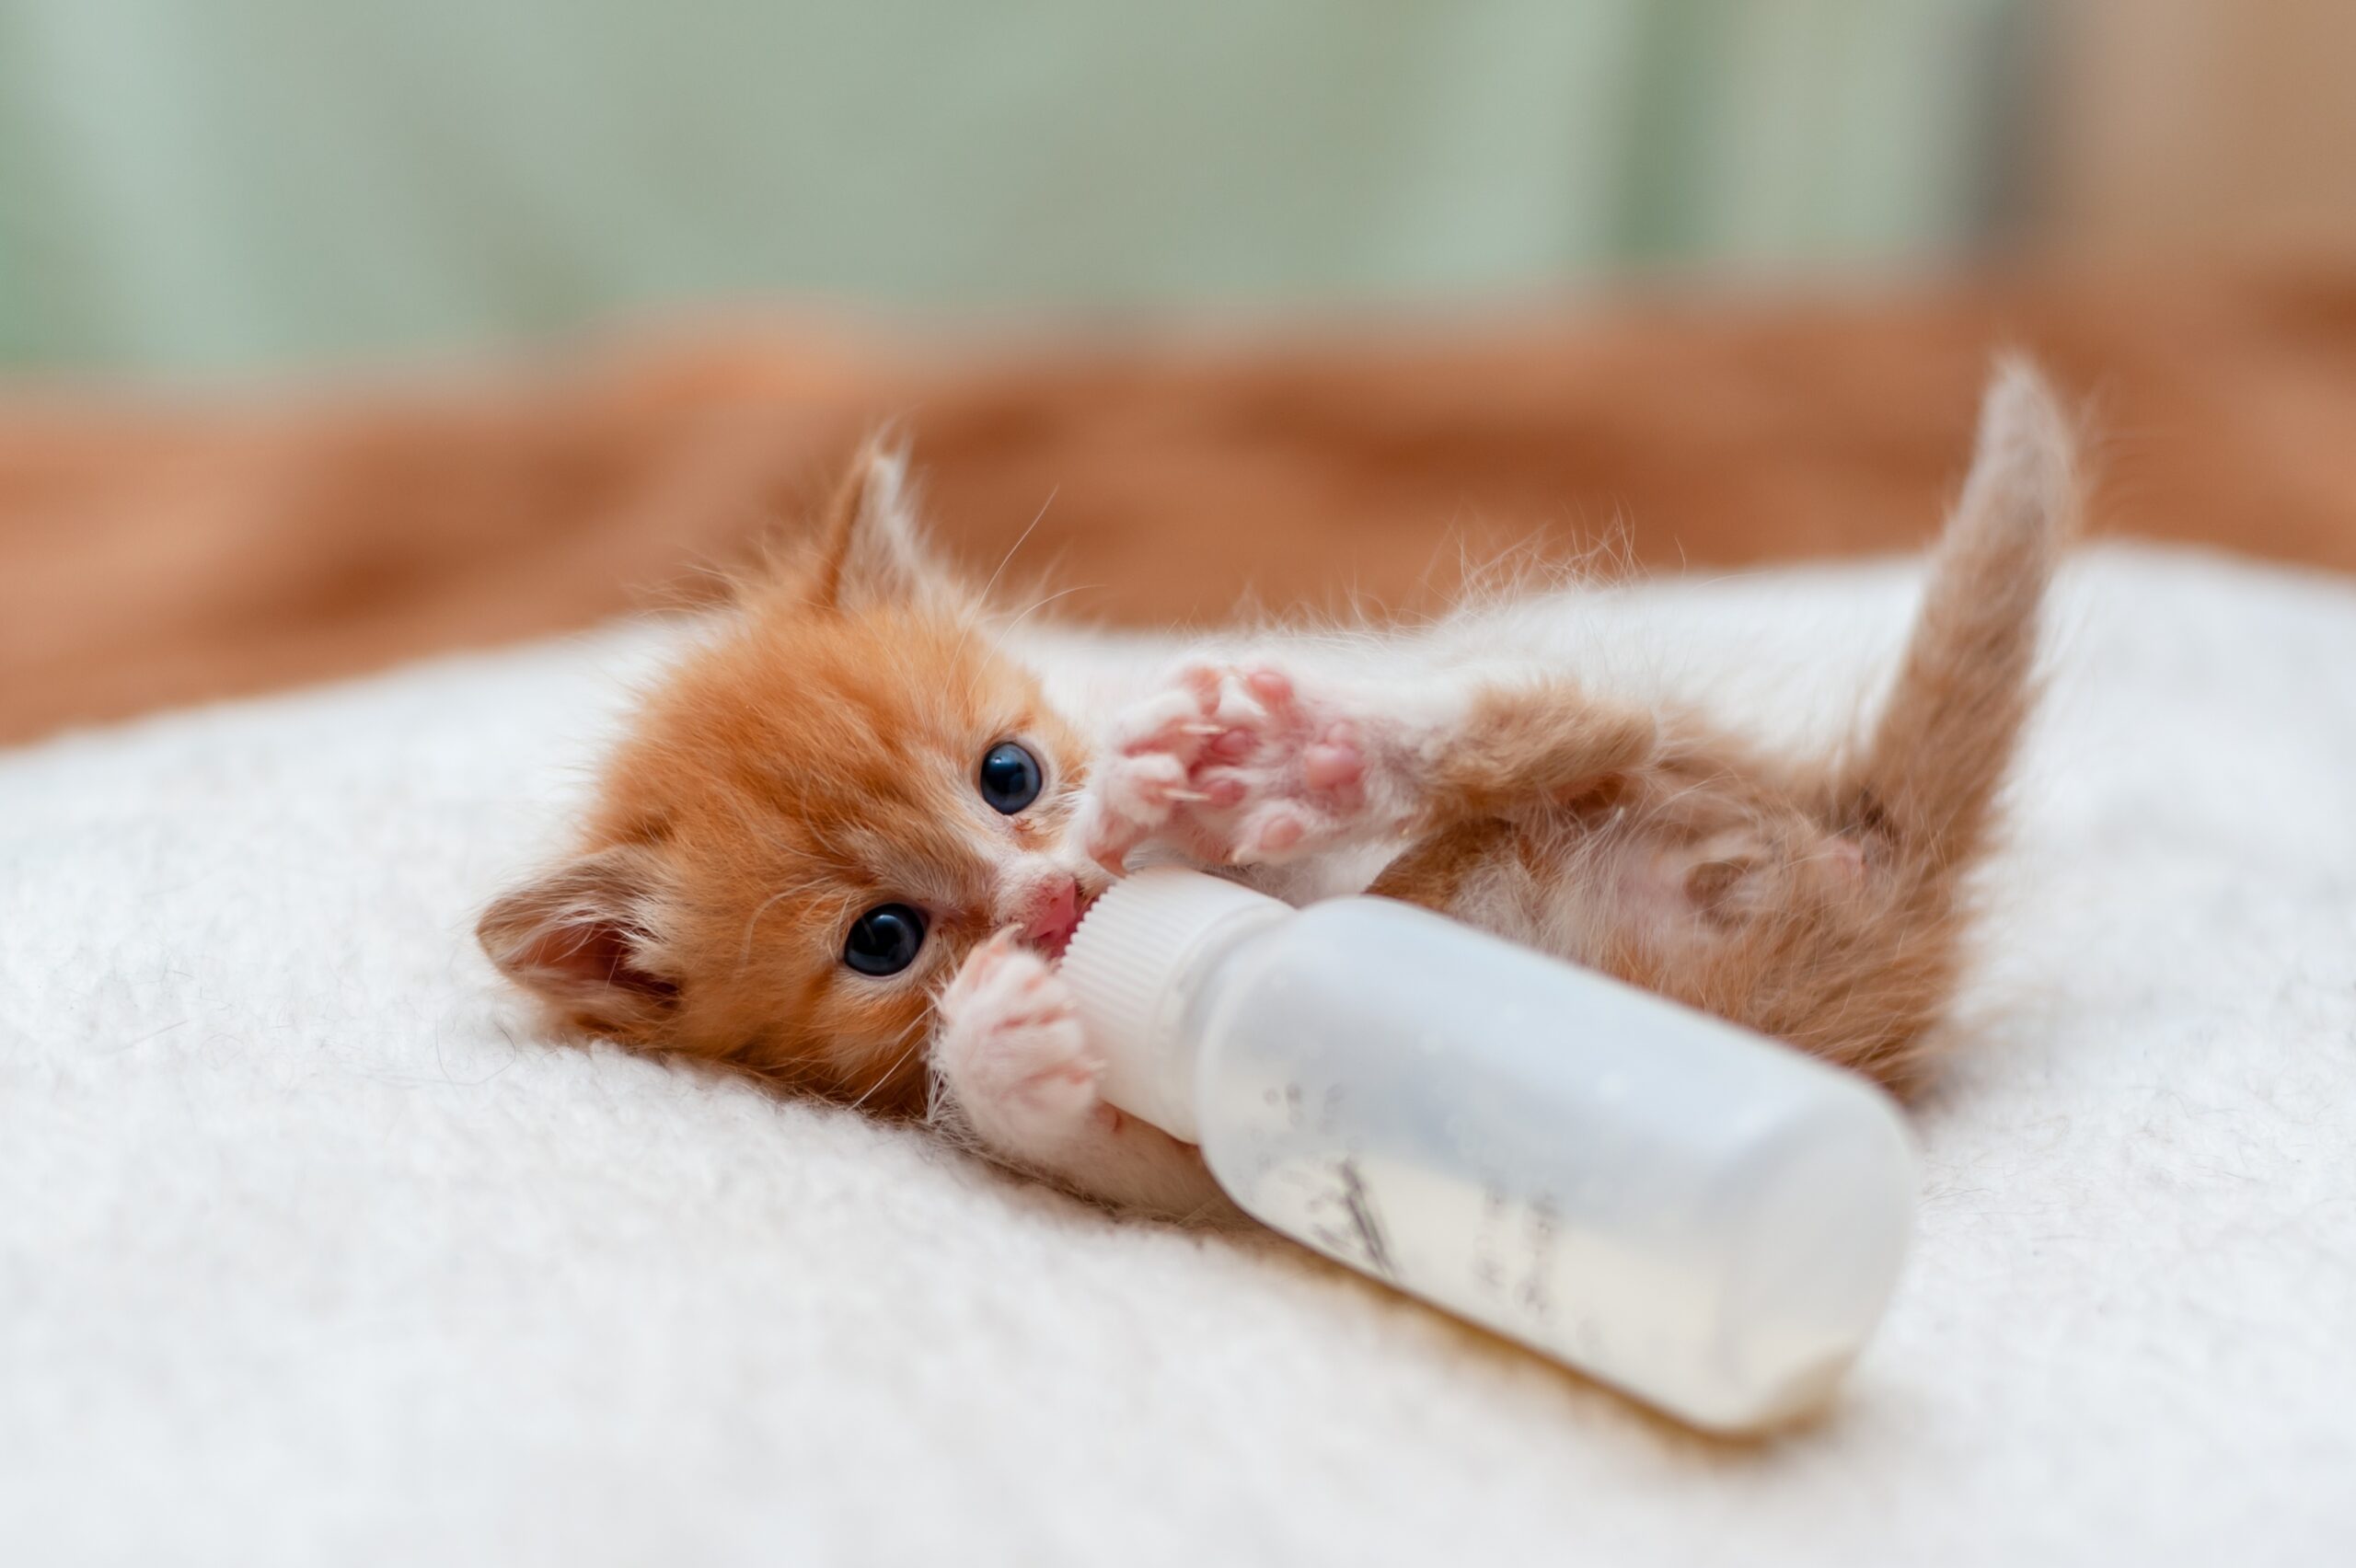 Feeding,Kitten,With,Tiny,Milk,Bottle,,Tiny,Cat,Drinking,Milk